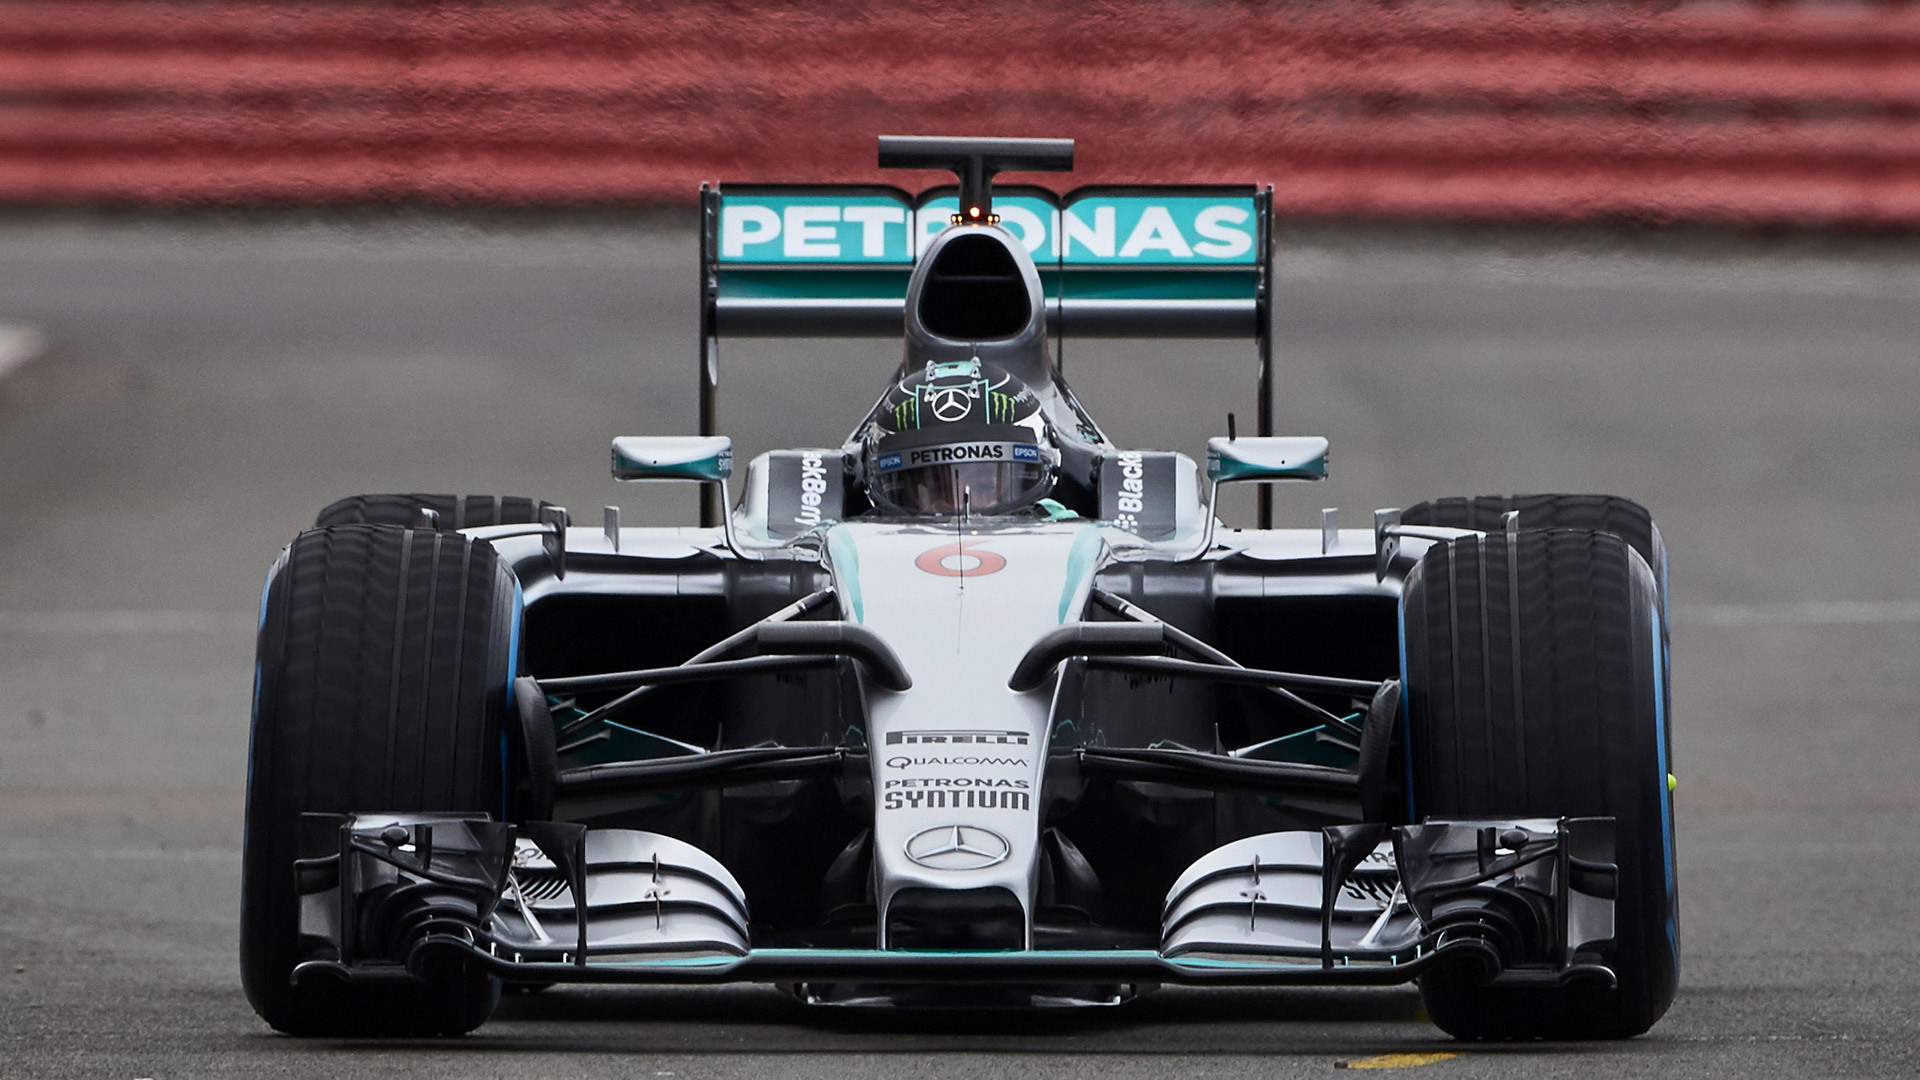 Mercedes AMG W06 Hybrid 2015 Formula One car